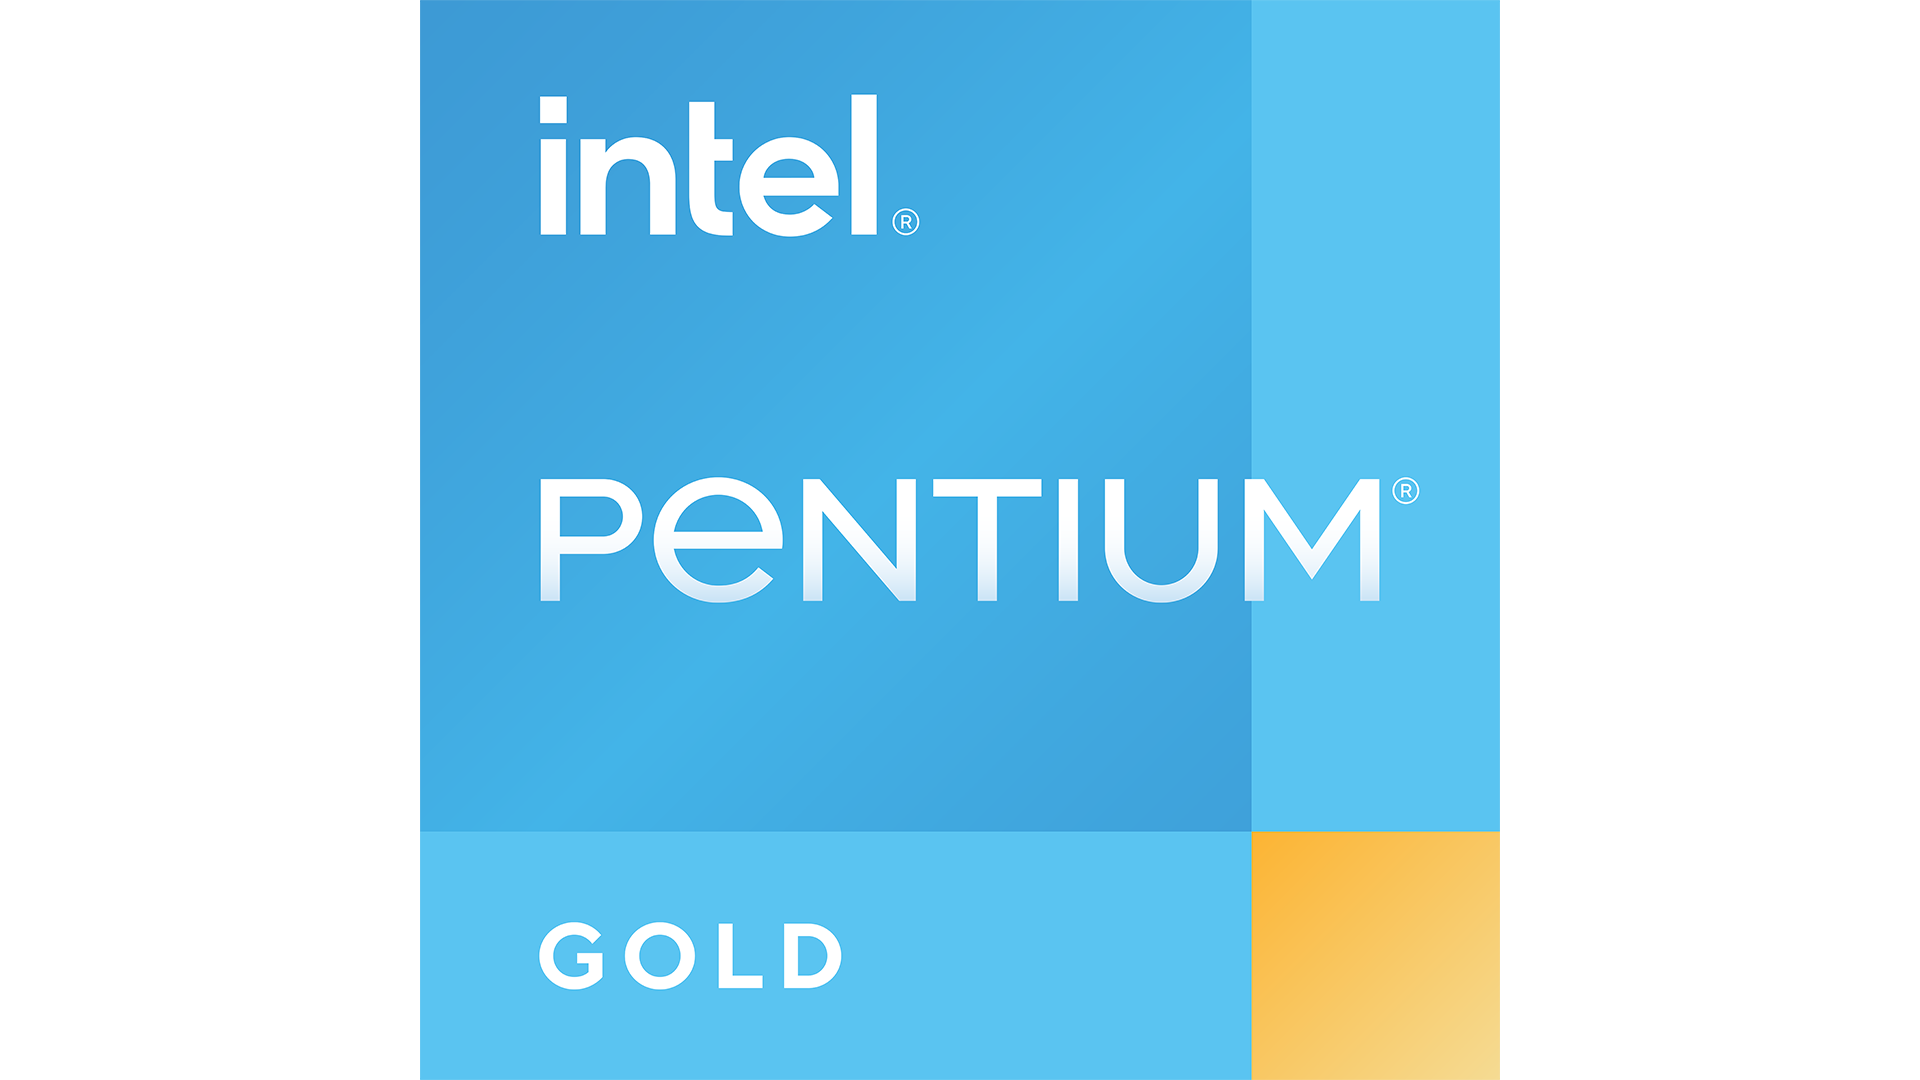 Intel® Pentium® Gold 處理器 8505